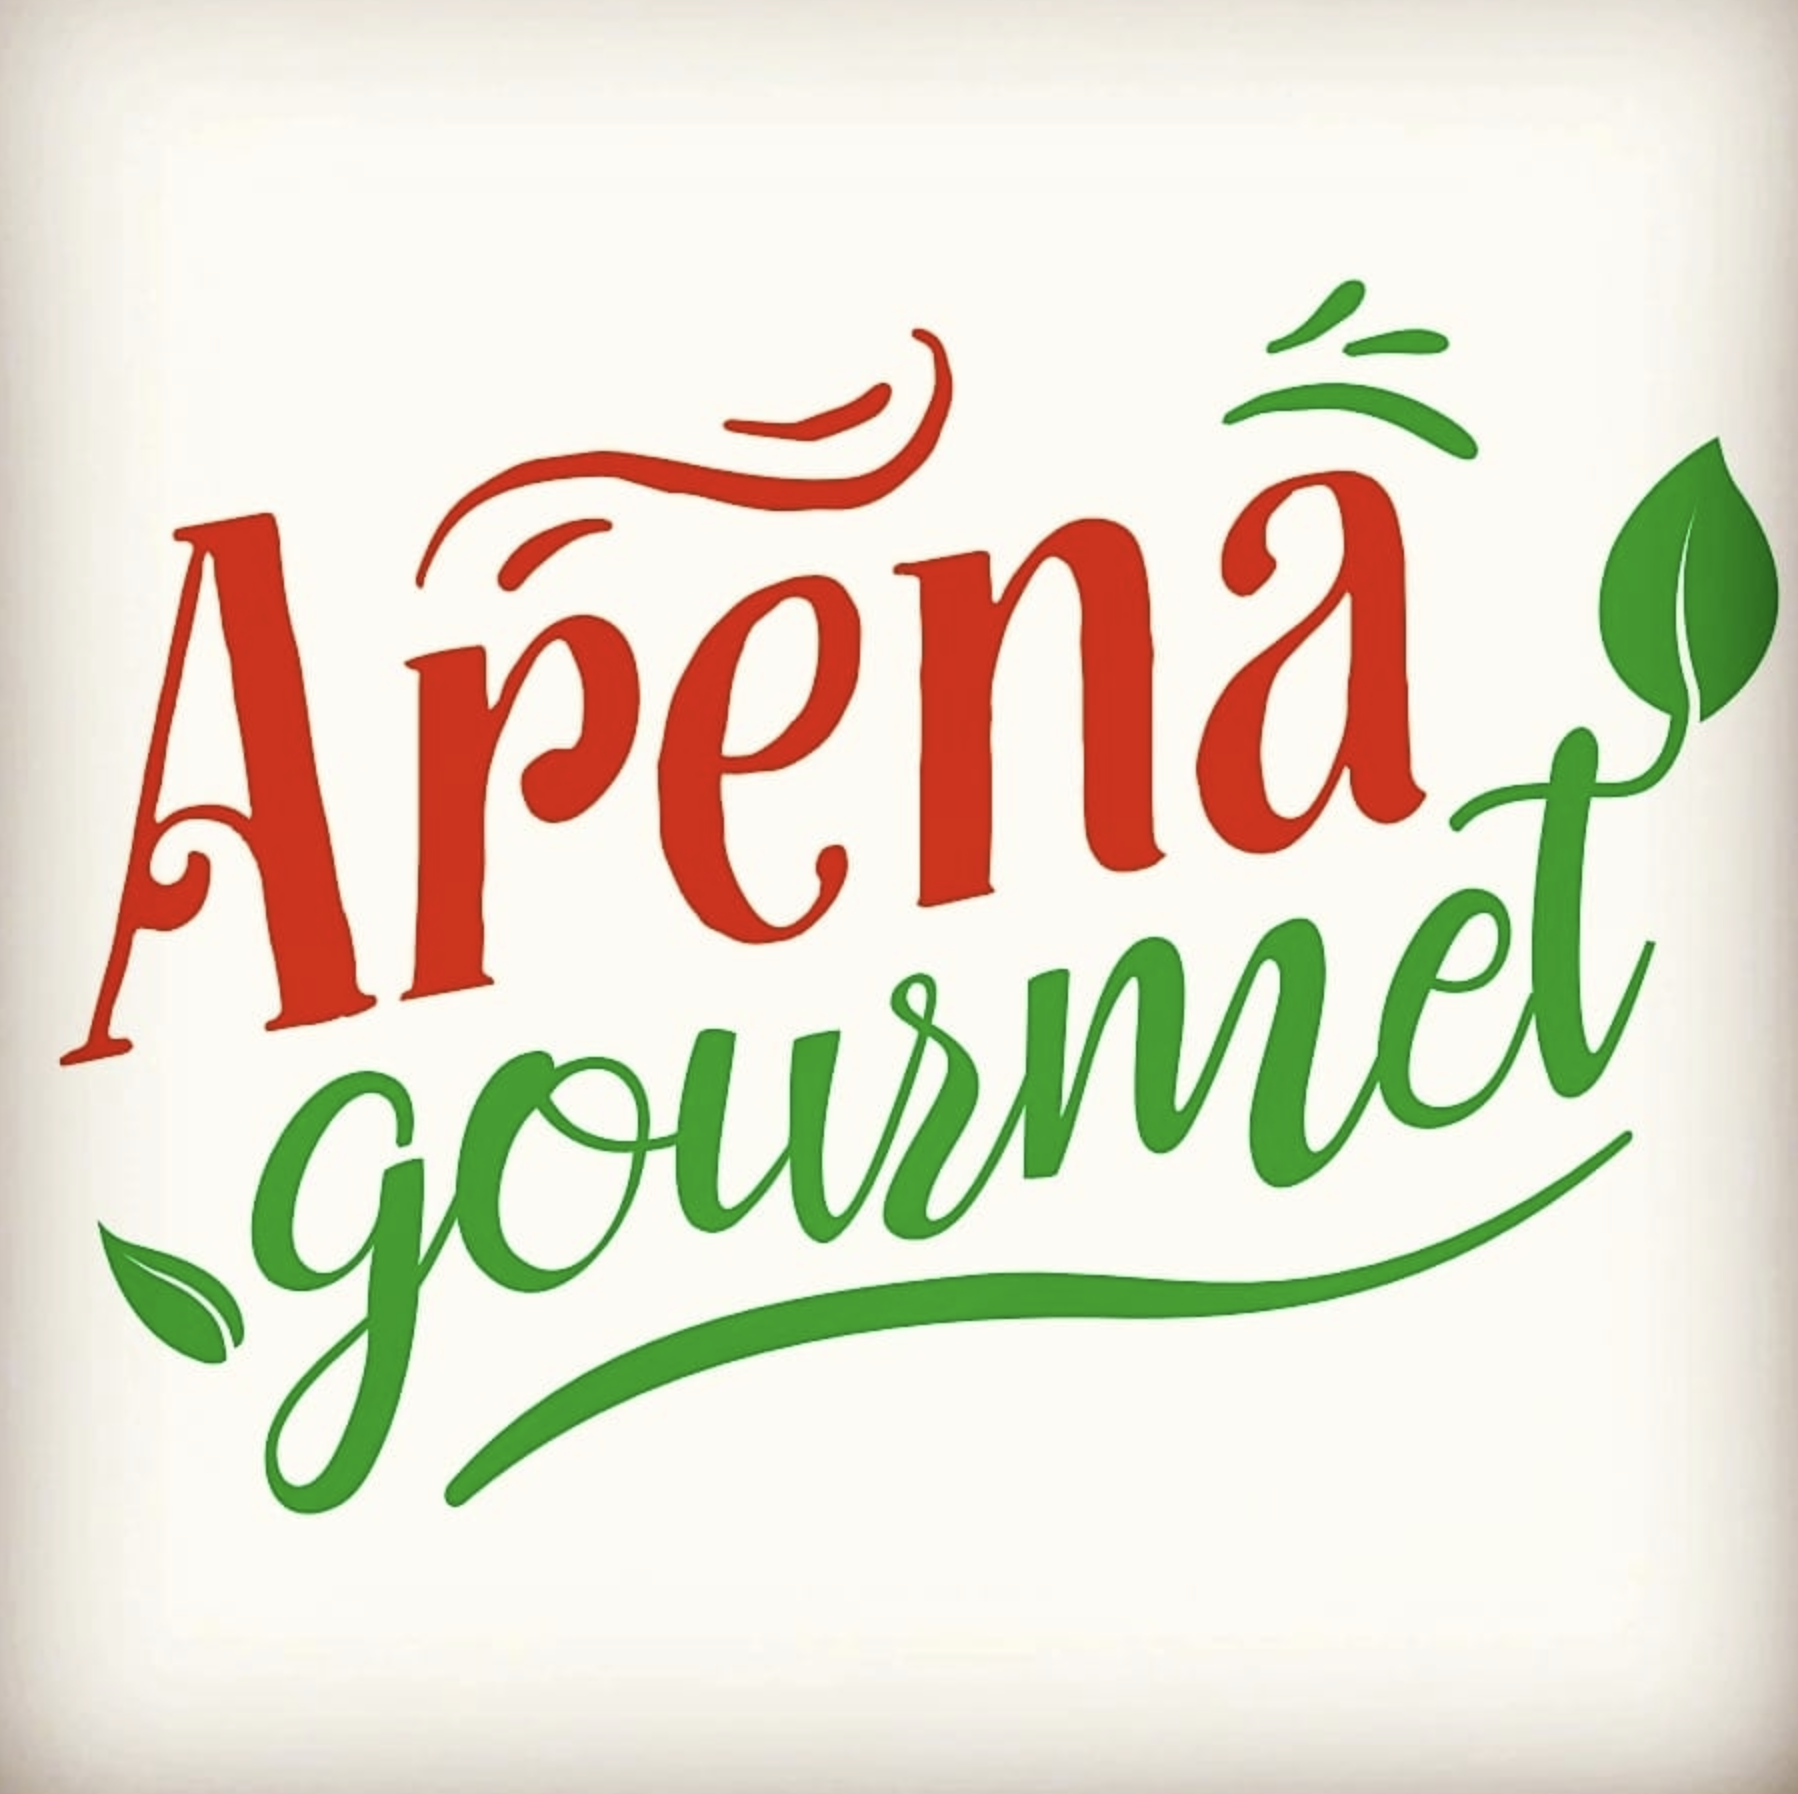 Arena Gourmet